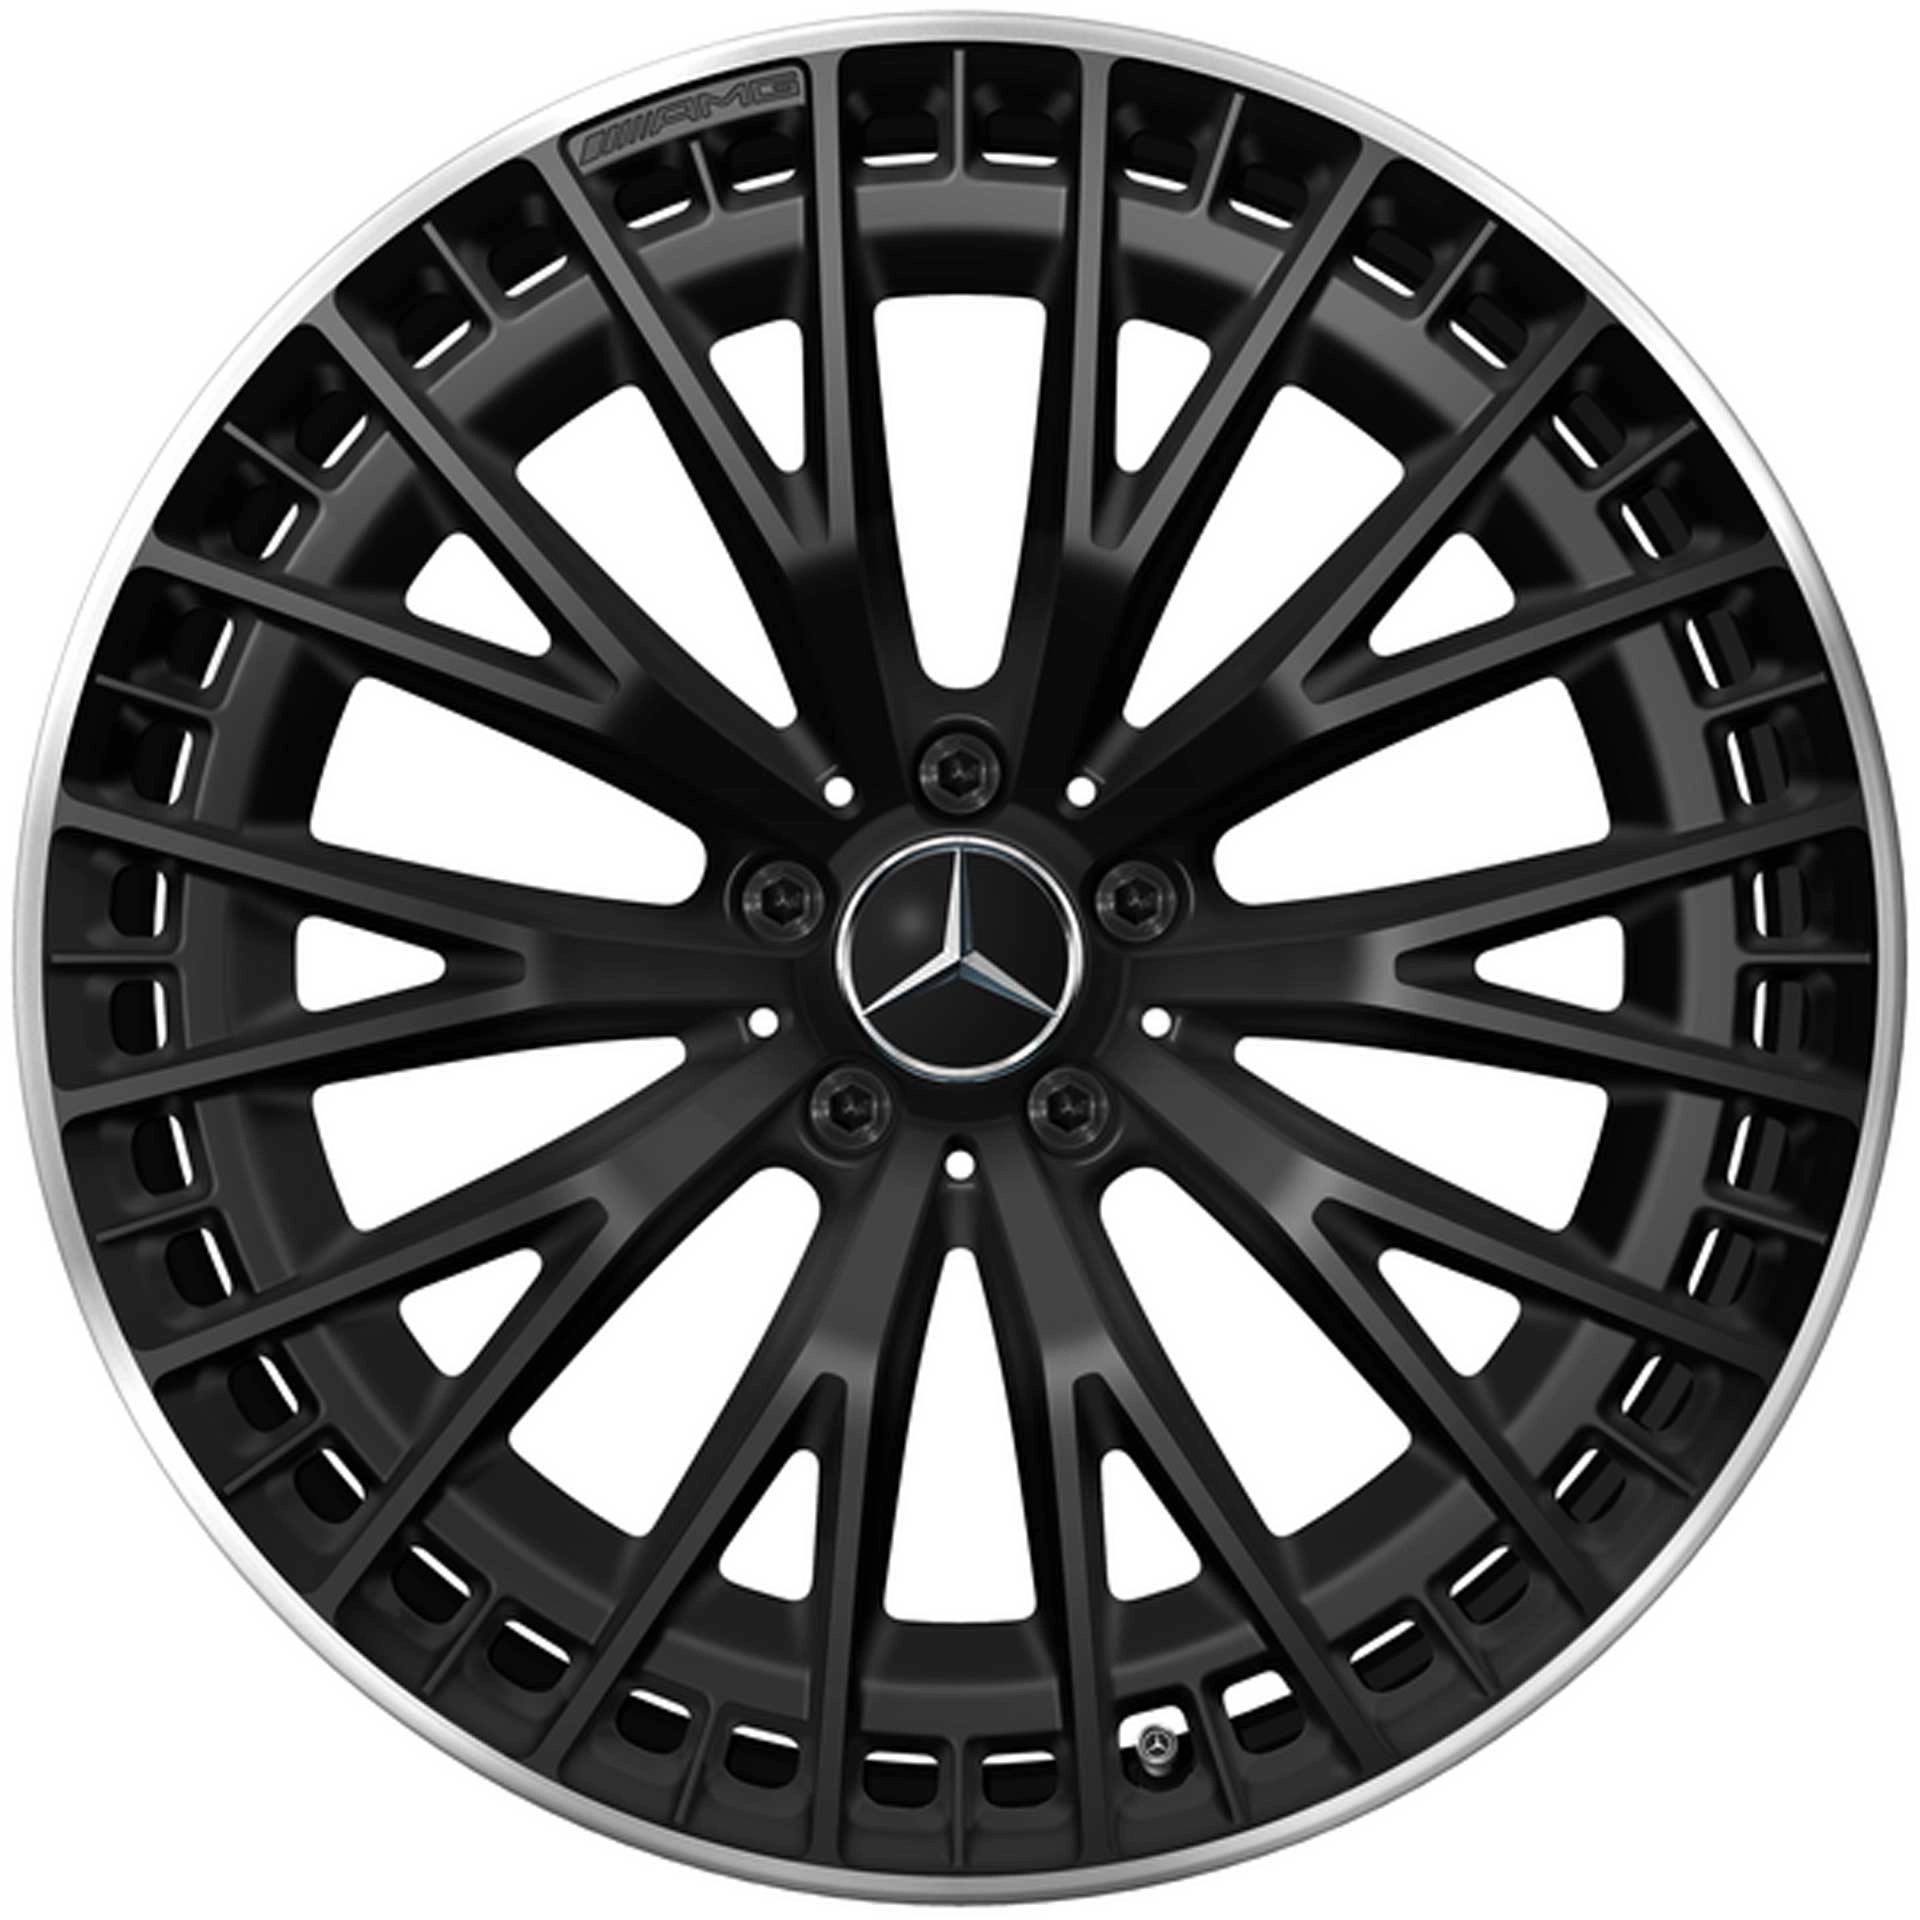 Mercedes-AMG Vielspeichen-Rad 21 Zoll Leichtmetallfelge EQE schwarz matt Felgenhorn glanzgedreht A29540129007X71